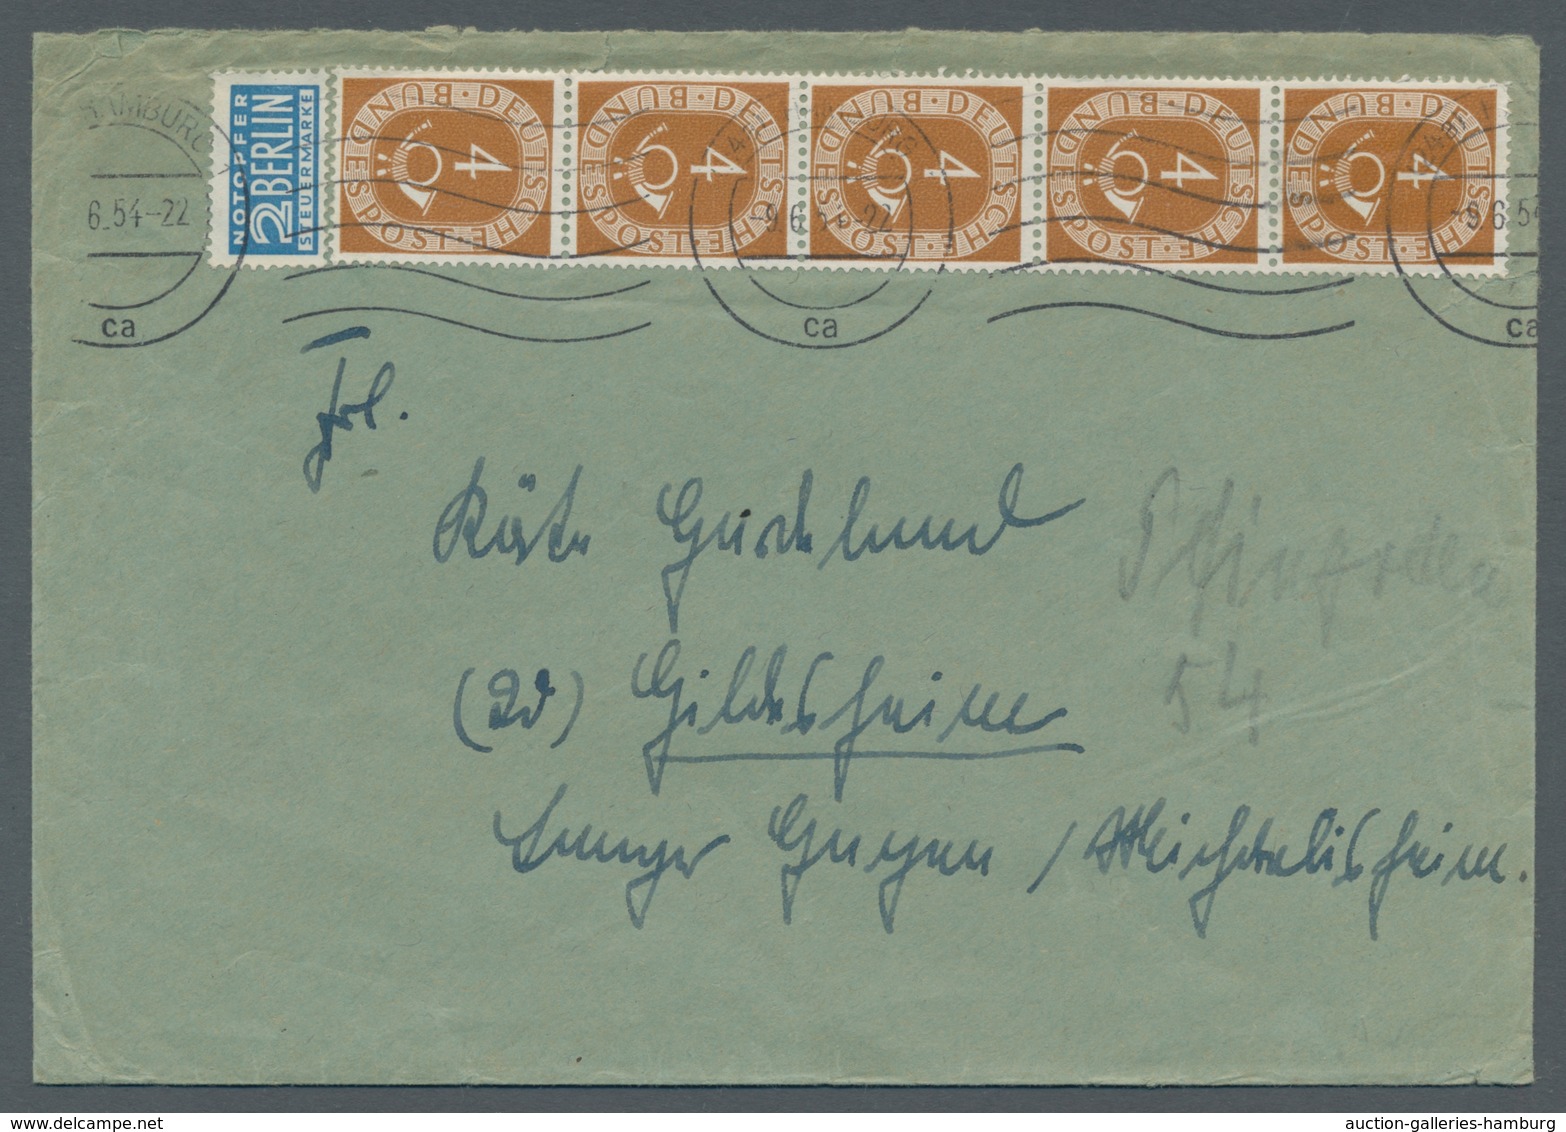 Bundesrepublik Deutschland: 1951-1954, Sammlung von 24 Belegen mit Einheiten der Posthornserie in ei